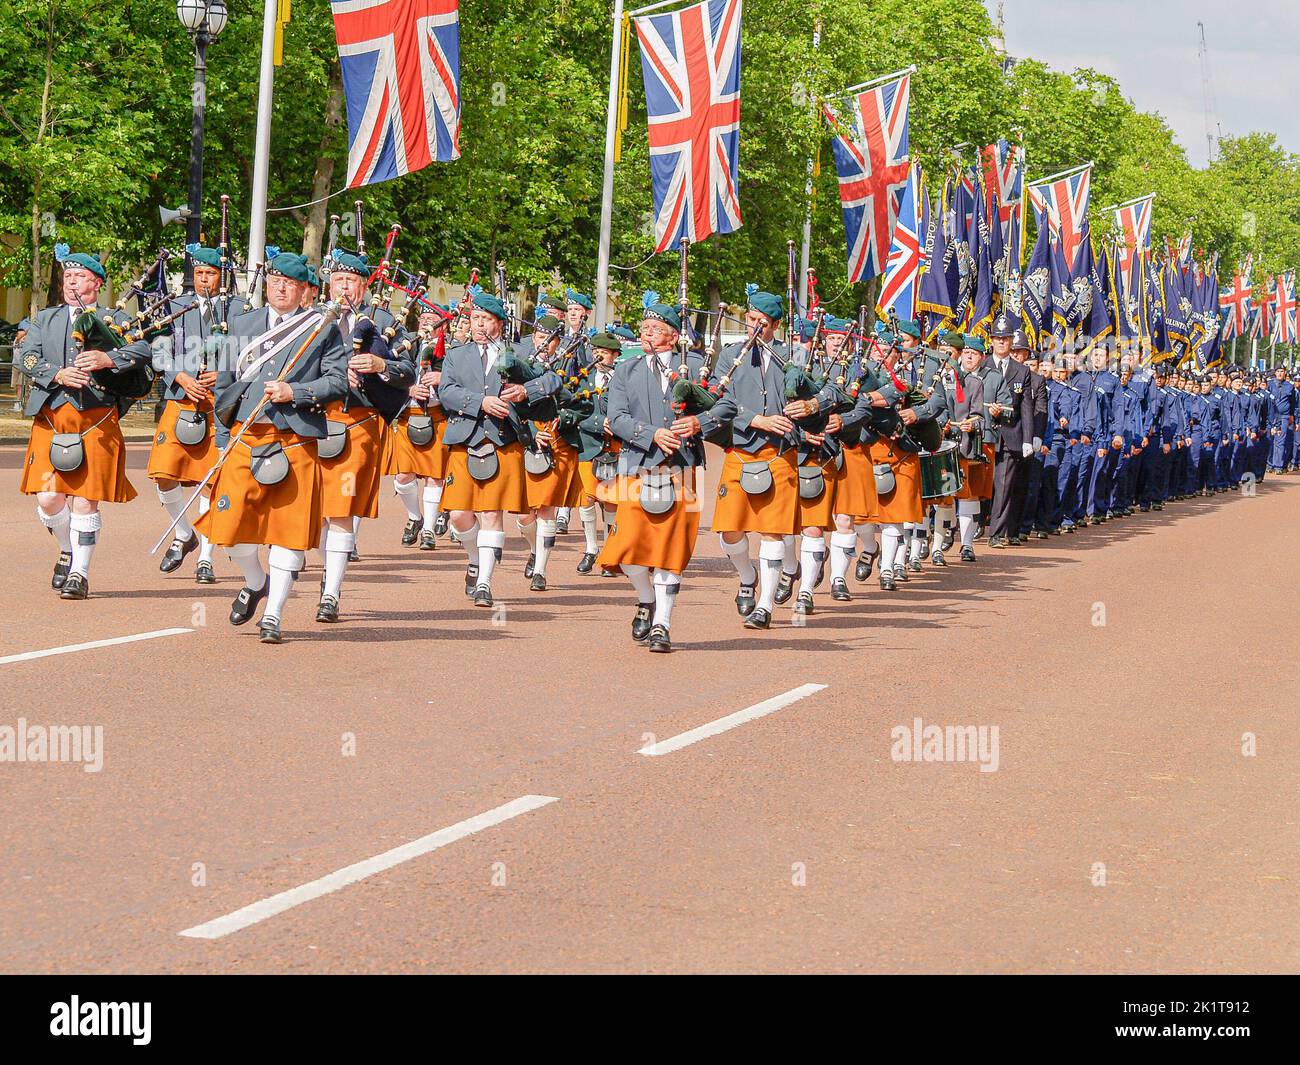 London Vereinigtes Königreich Juni 15 2009; typisch britischer Prunk und Zeremonie auf der Mall marschiert und Dudelsack unter drapierten Union Jack Flags.. Stockfoto